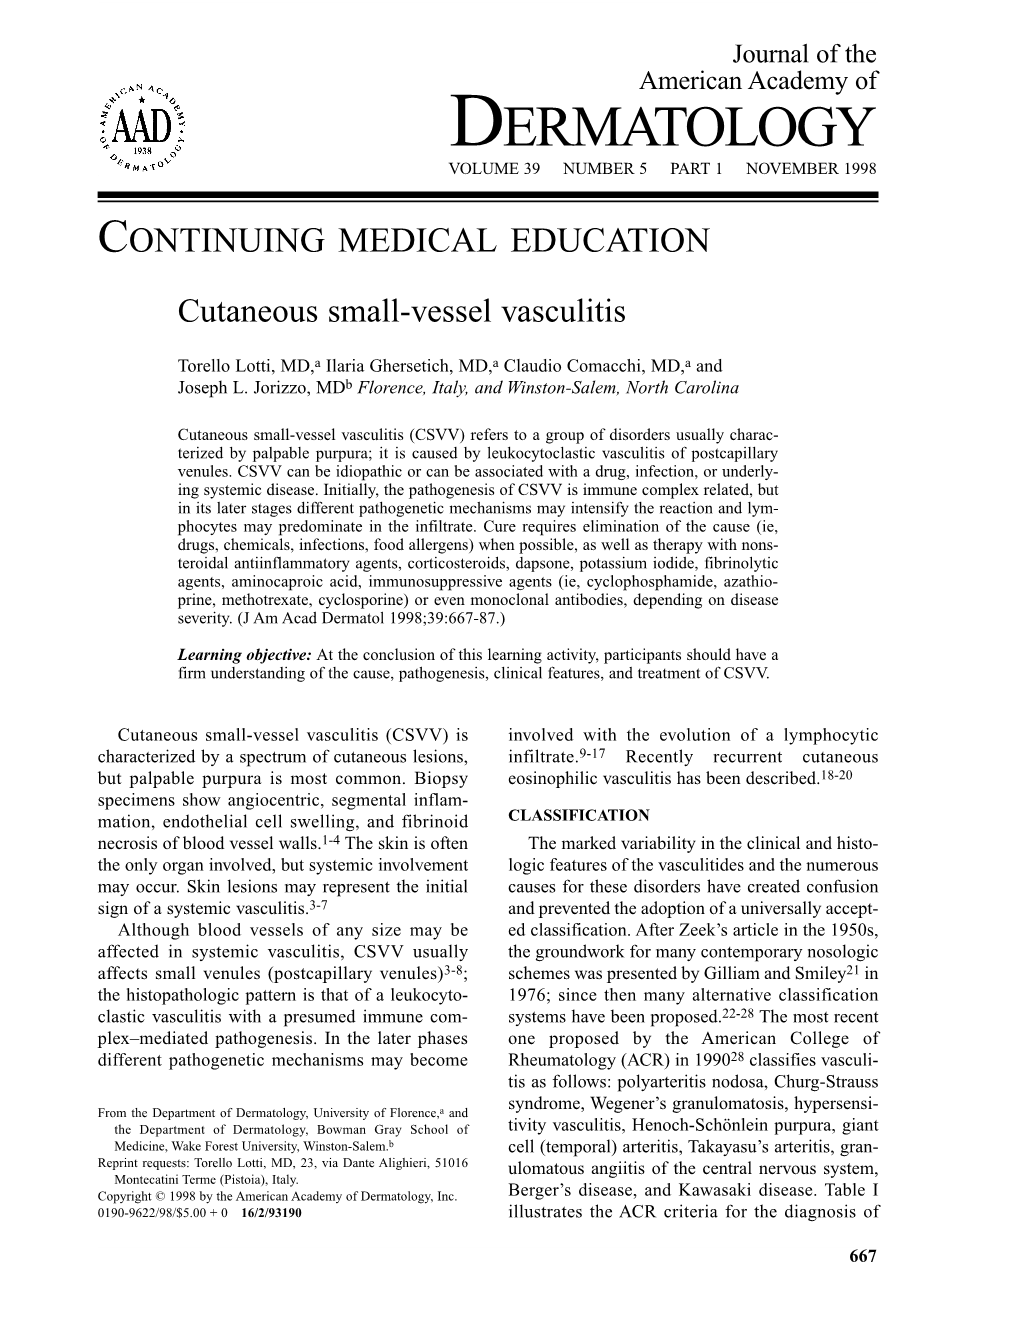 Dermatology Volume 39 Number 5 Part 1 November 1998